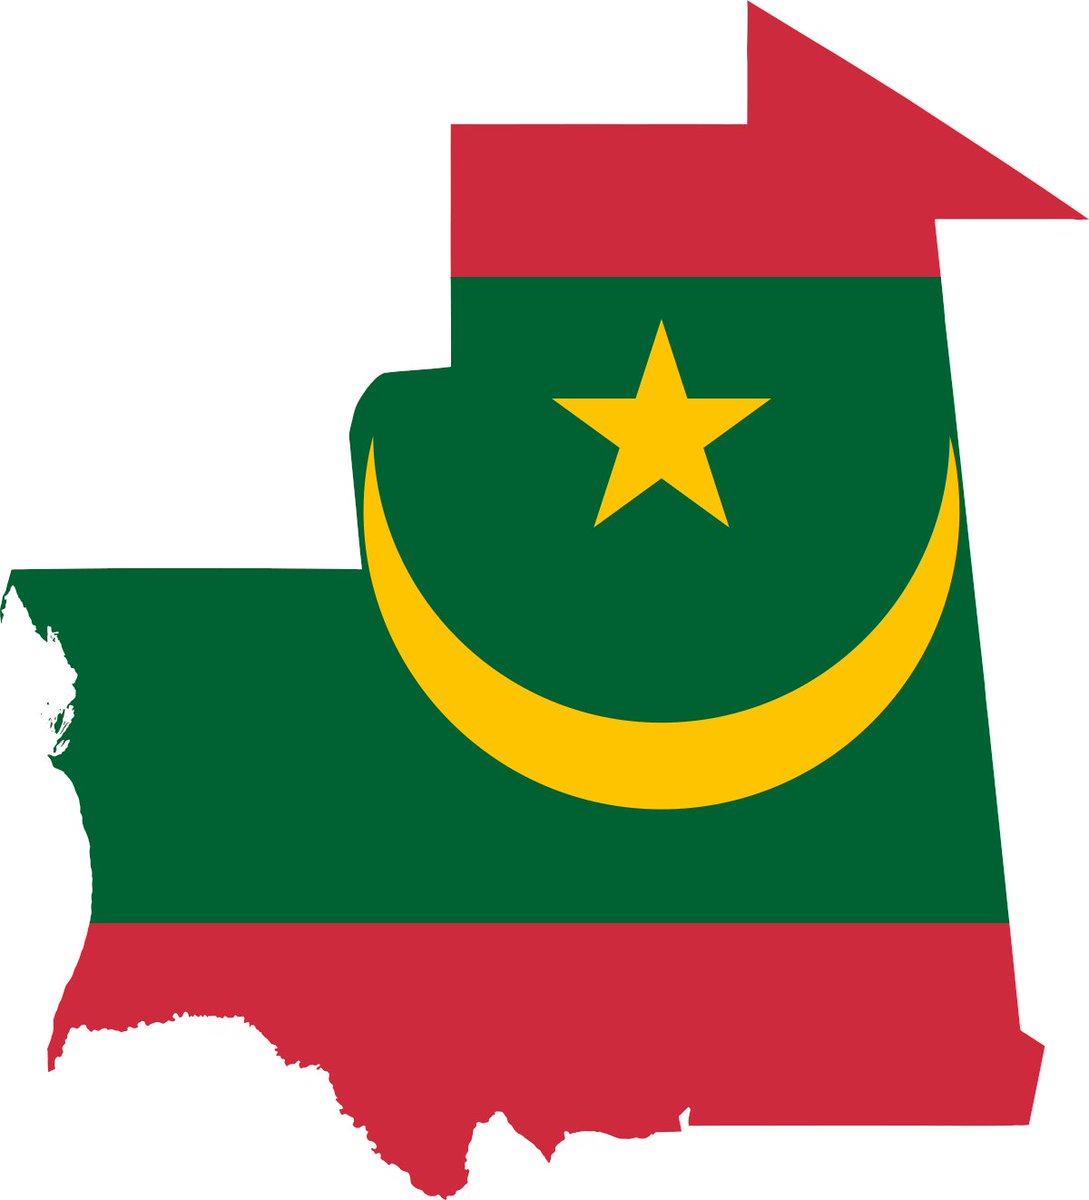 في موريتانيا الردة جريمة يعاقب عليها بالإعدام. في أبريل 2018 ، أقر البرلمان قانونًا جديدًا يعزز عقوبة الإعدام الحالية لبعض جرائم التجديف. يزيل القانون الجديد إمكانية التوبة كوسيلة لتجنب عقوبة الإعدام بتهمة التجديف